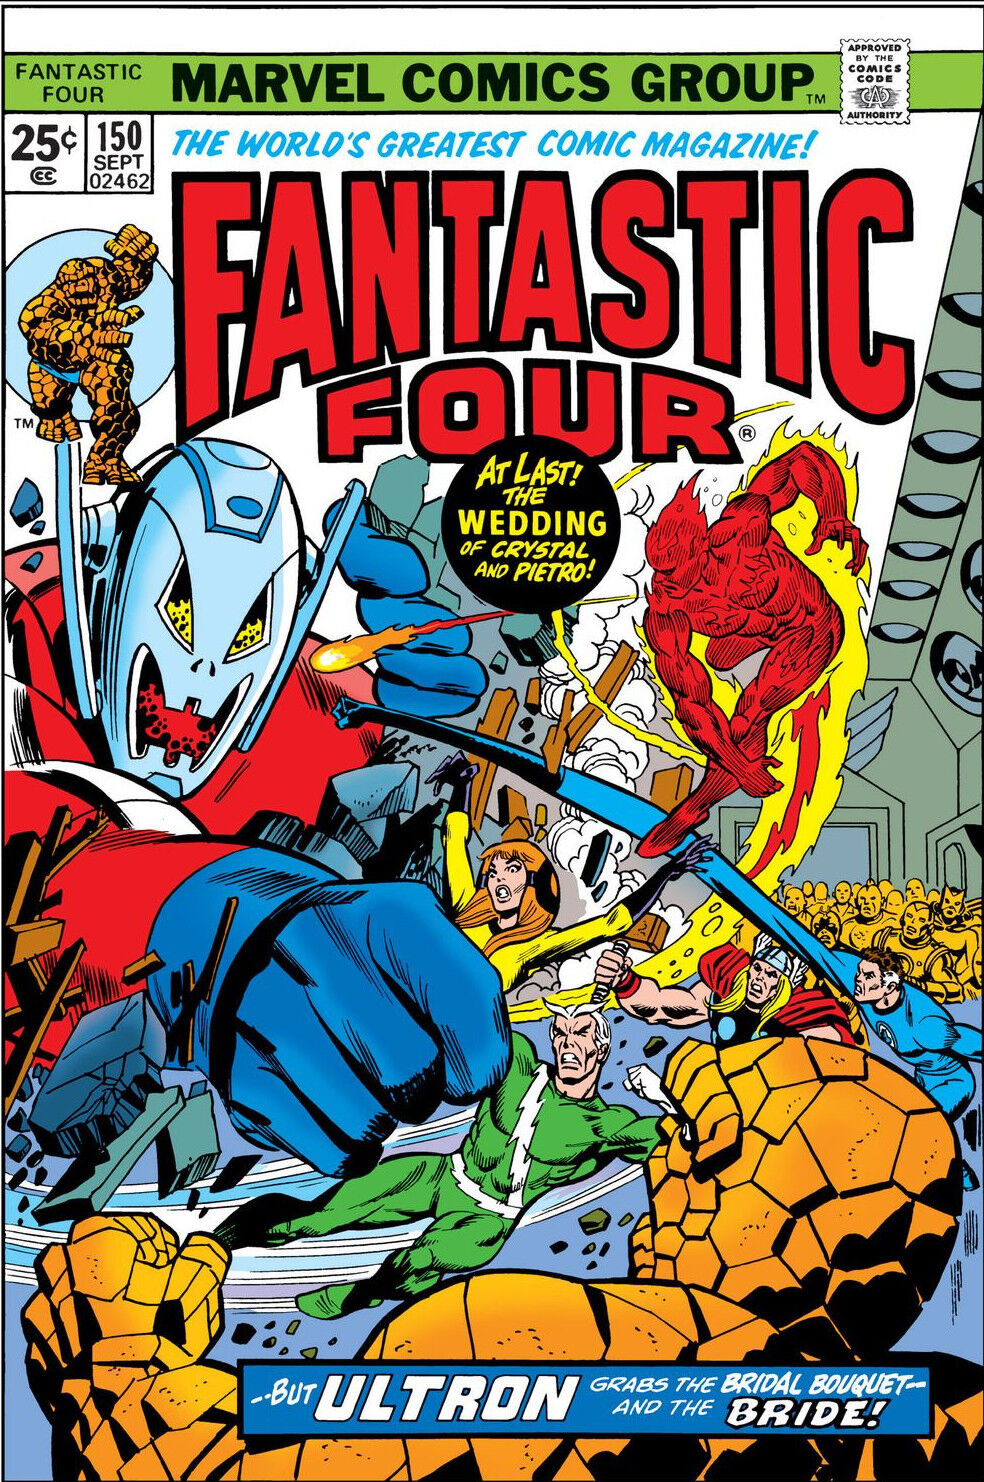 Fantastic Four Volume 1 #150